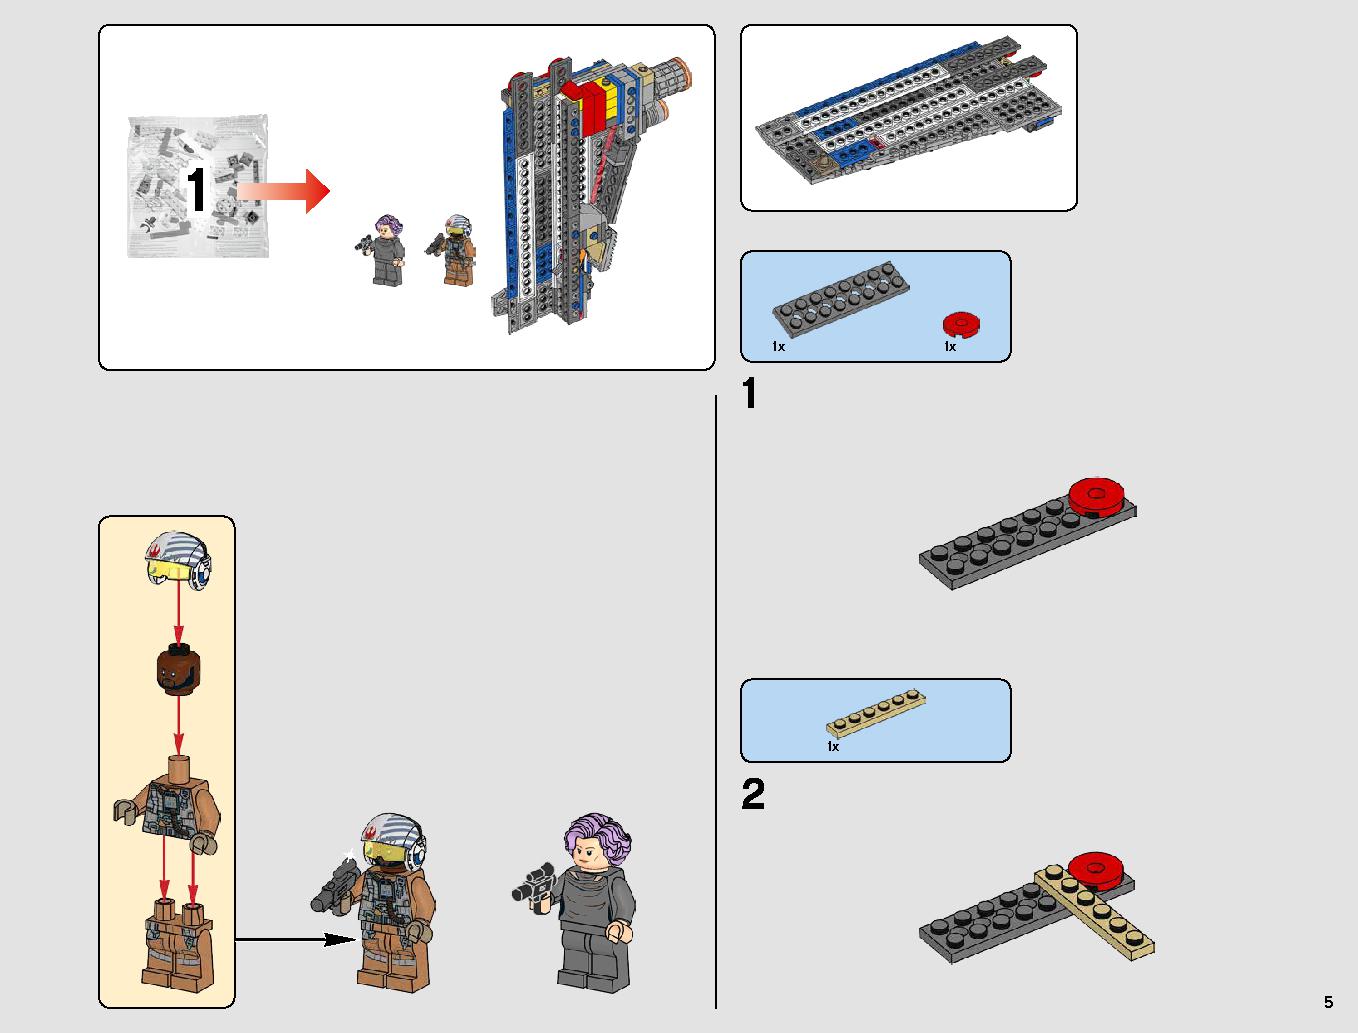 レジスタンス・ボマー 75188 レゴの商品情報 レゴの説明書・組立方法 5 page